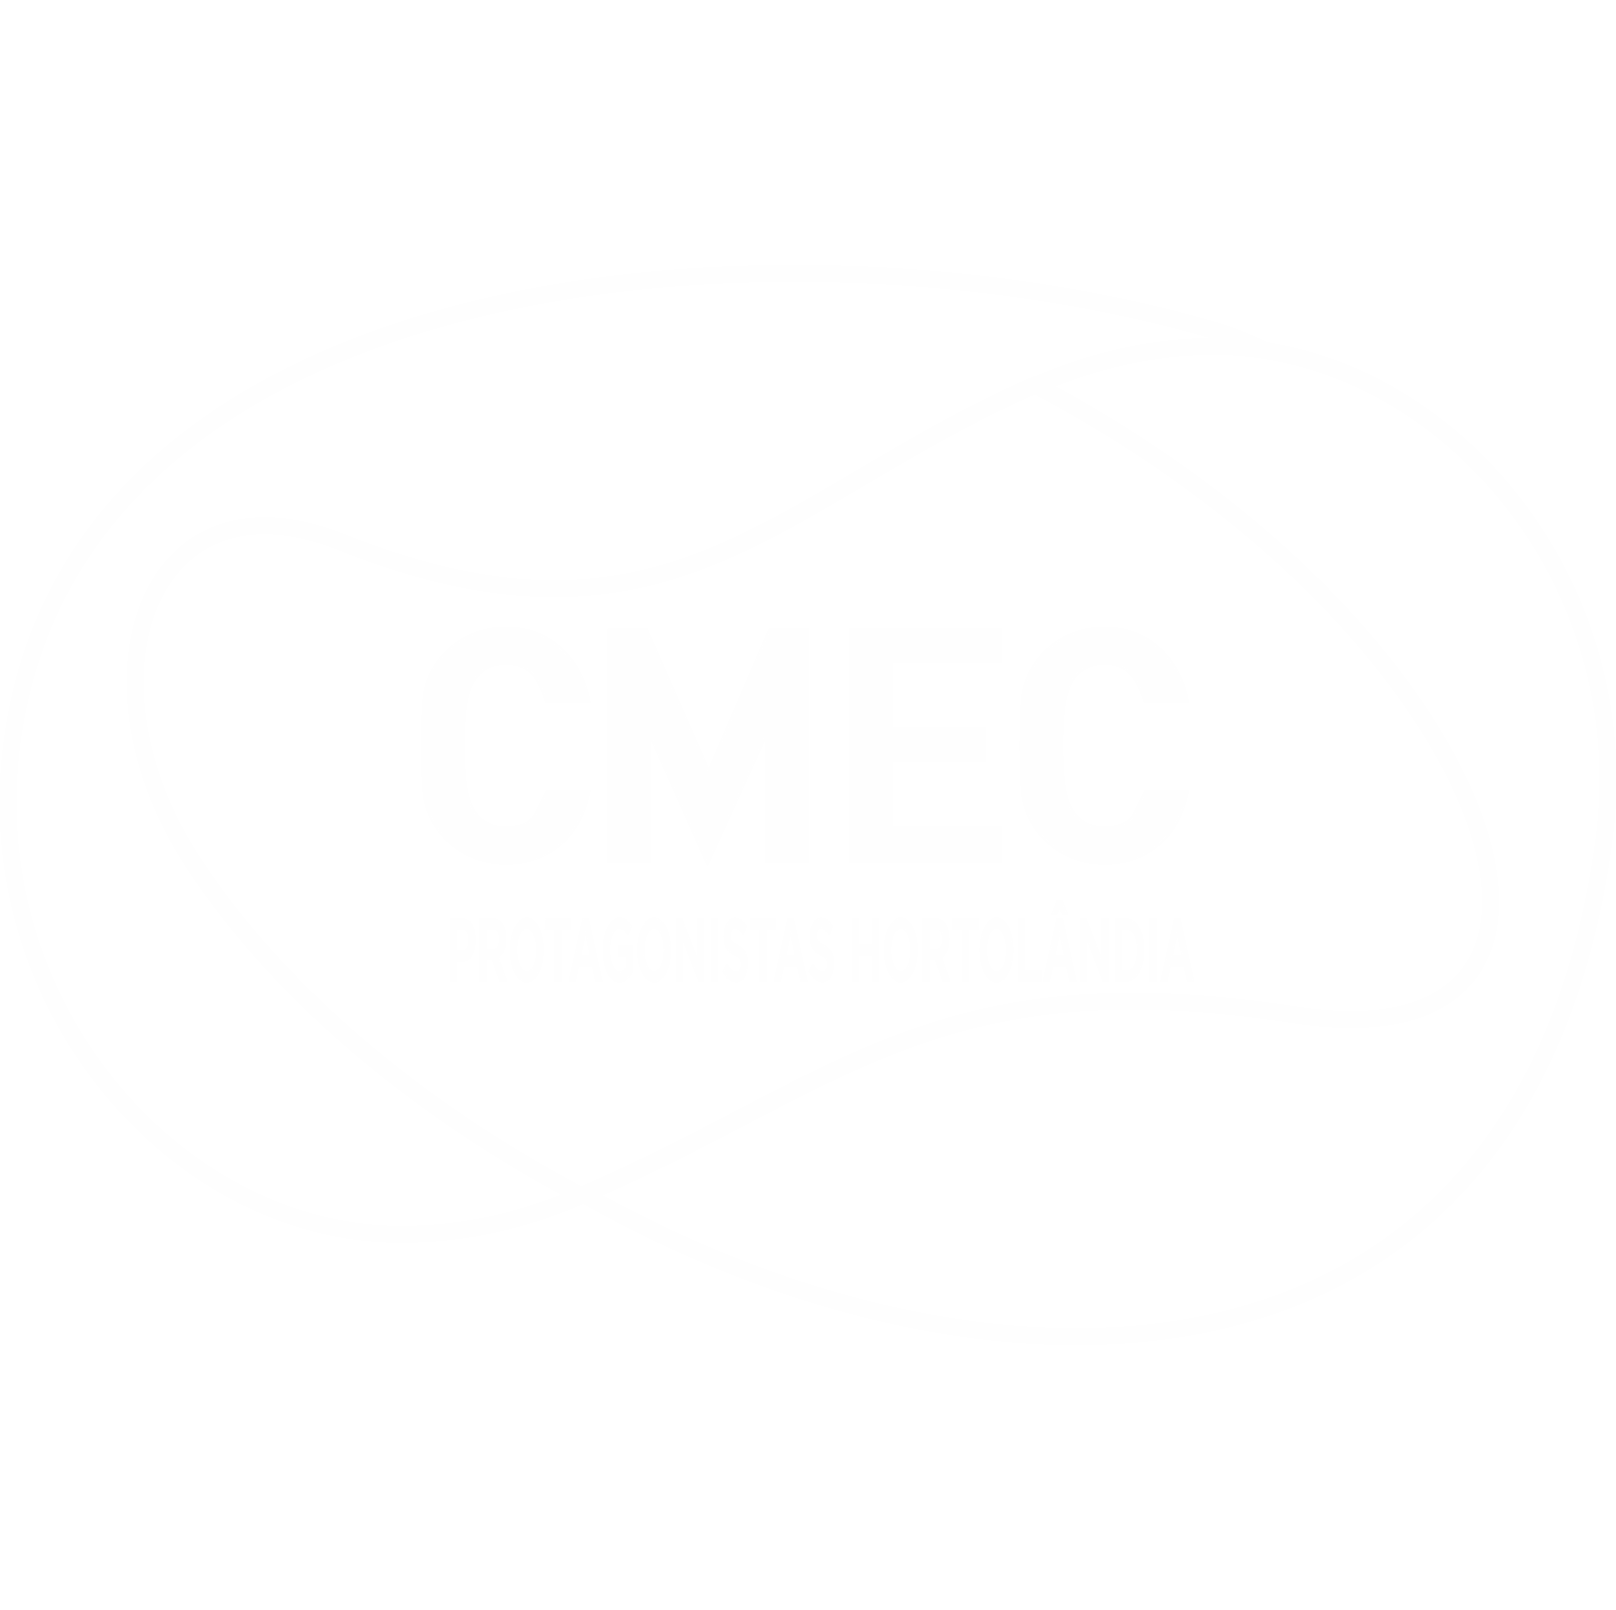 CMEC Hortolândia